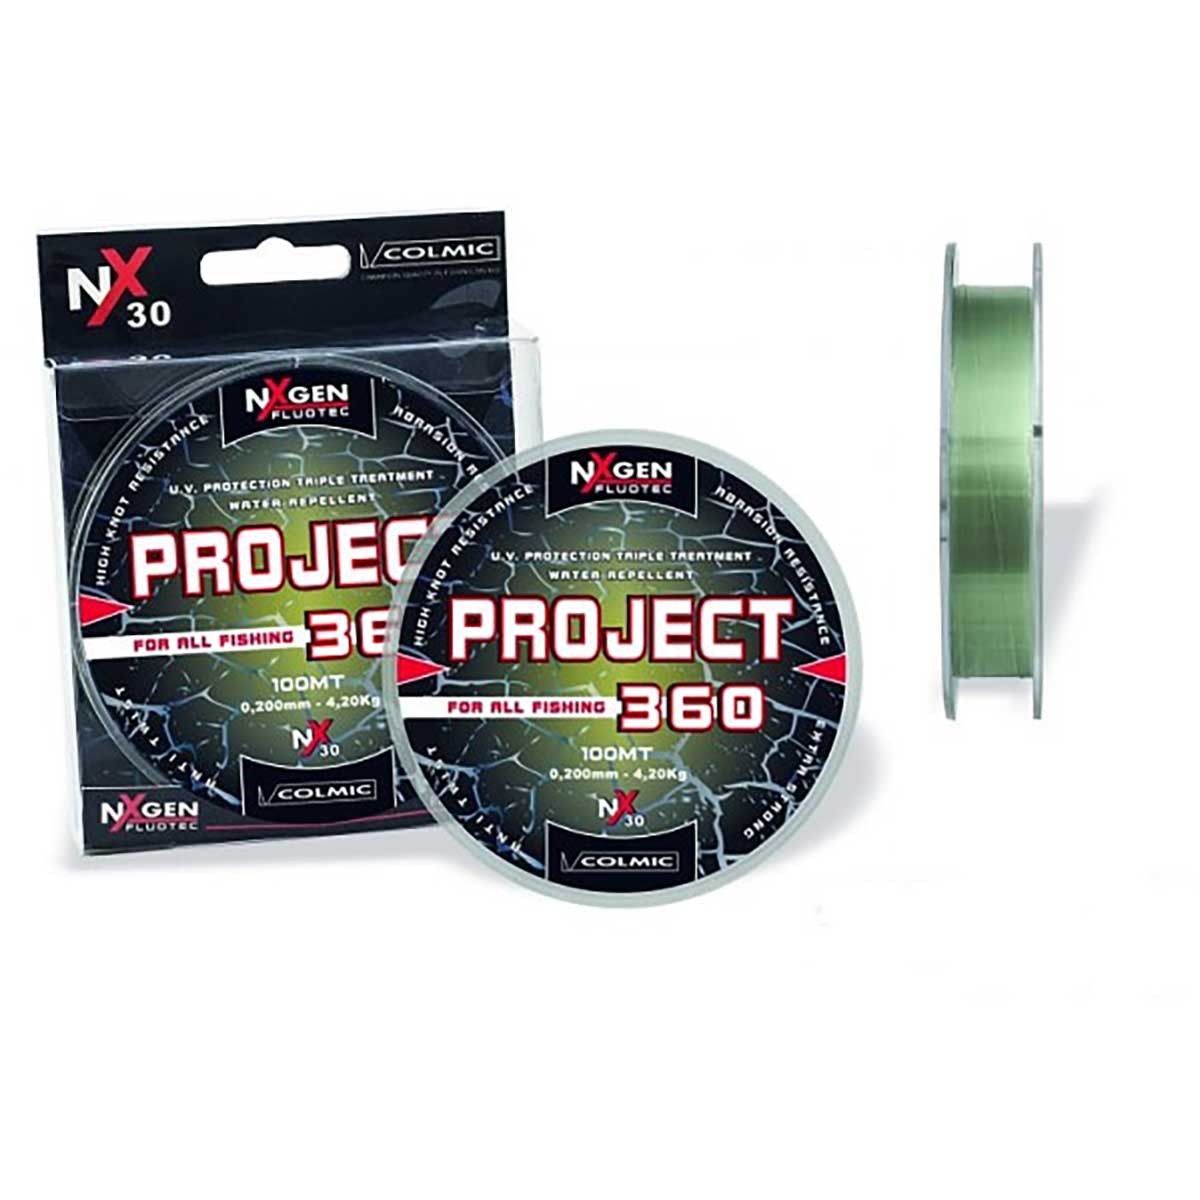 Colmic Project 360 tüm balıkçılık yöntemleri için özel geliştirilmiş bir misinadır. düşük hafızalı güçlü bir üründür